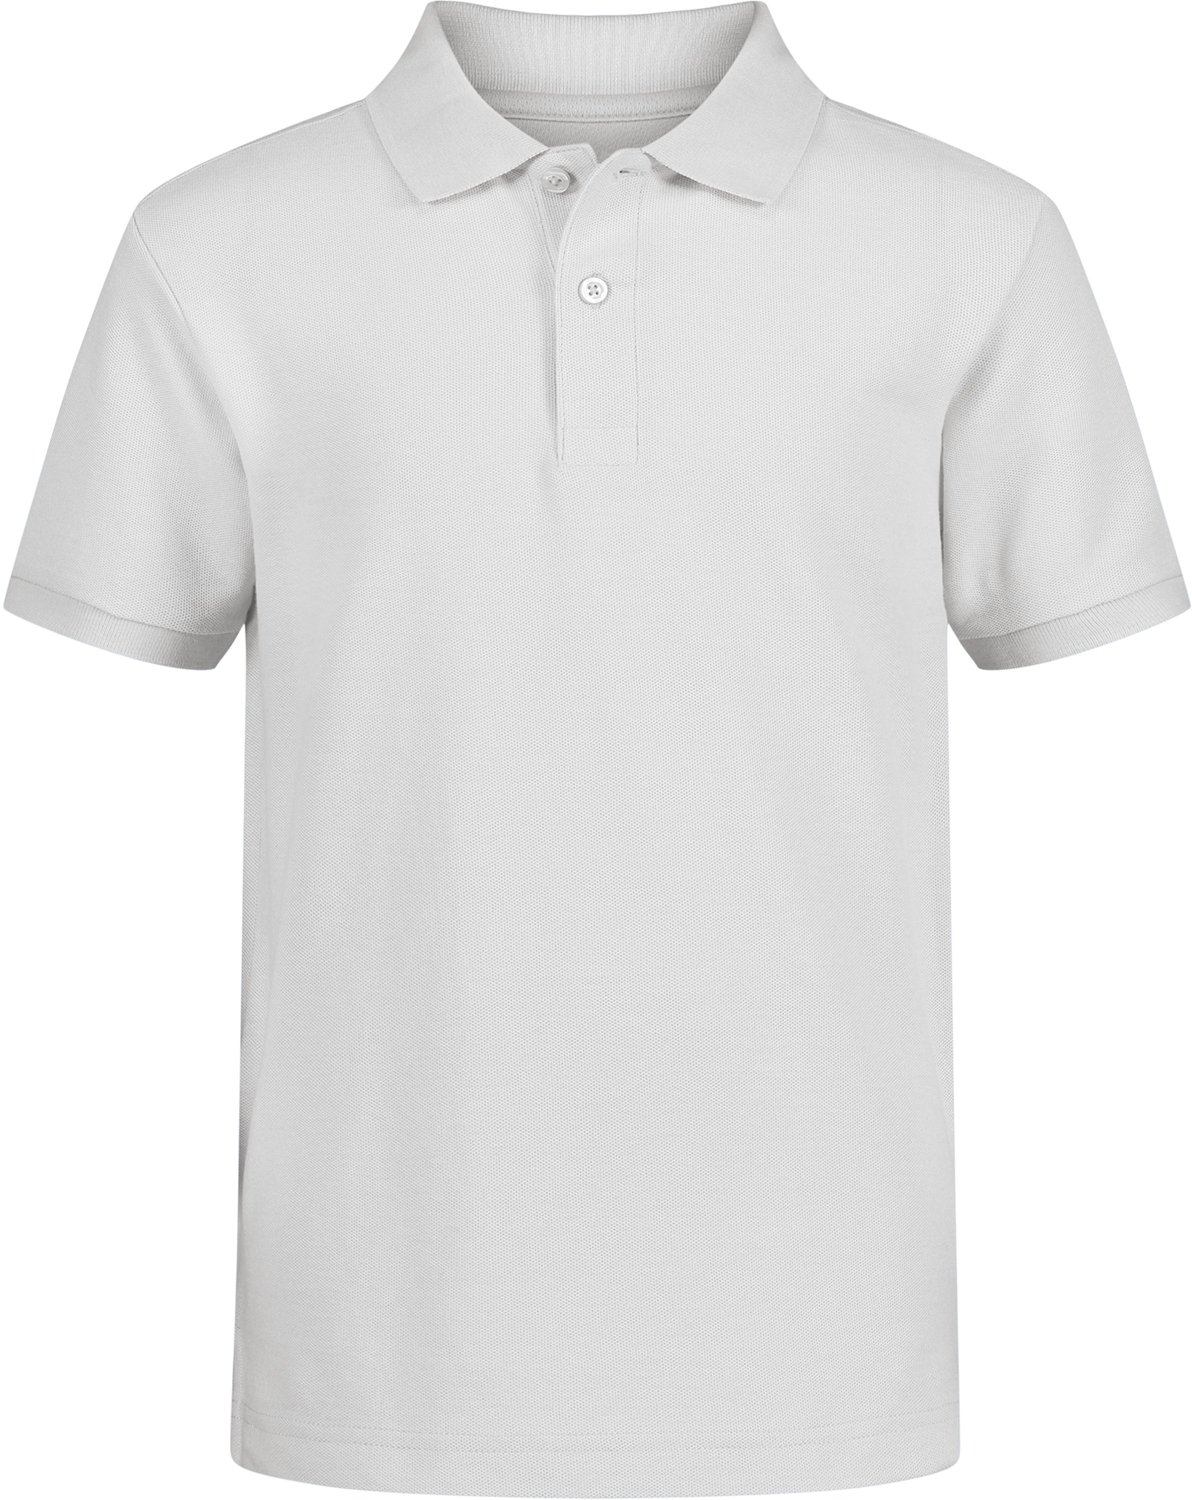 Nautica Boys' 8-20 Double Pique Short Sleeve Polo Shirt | Academy